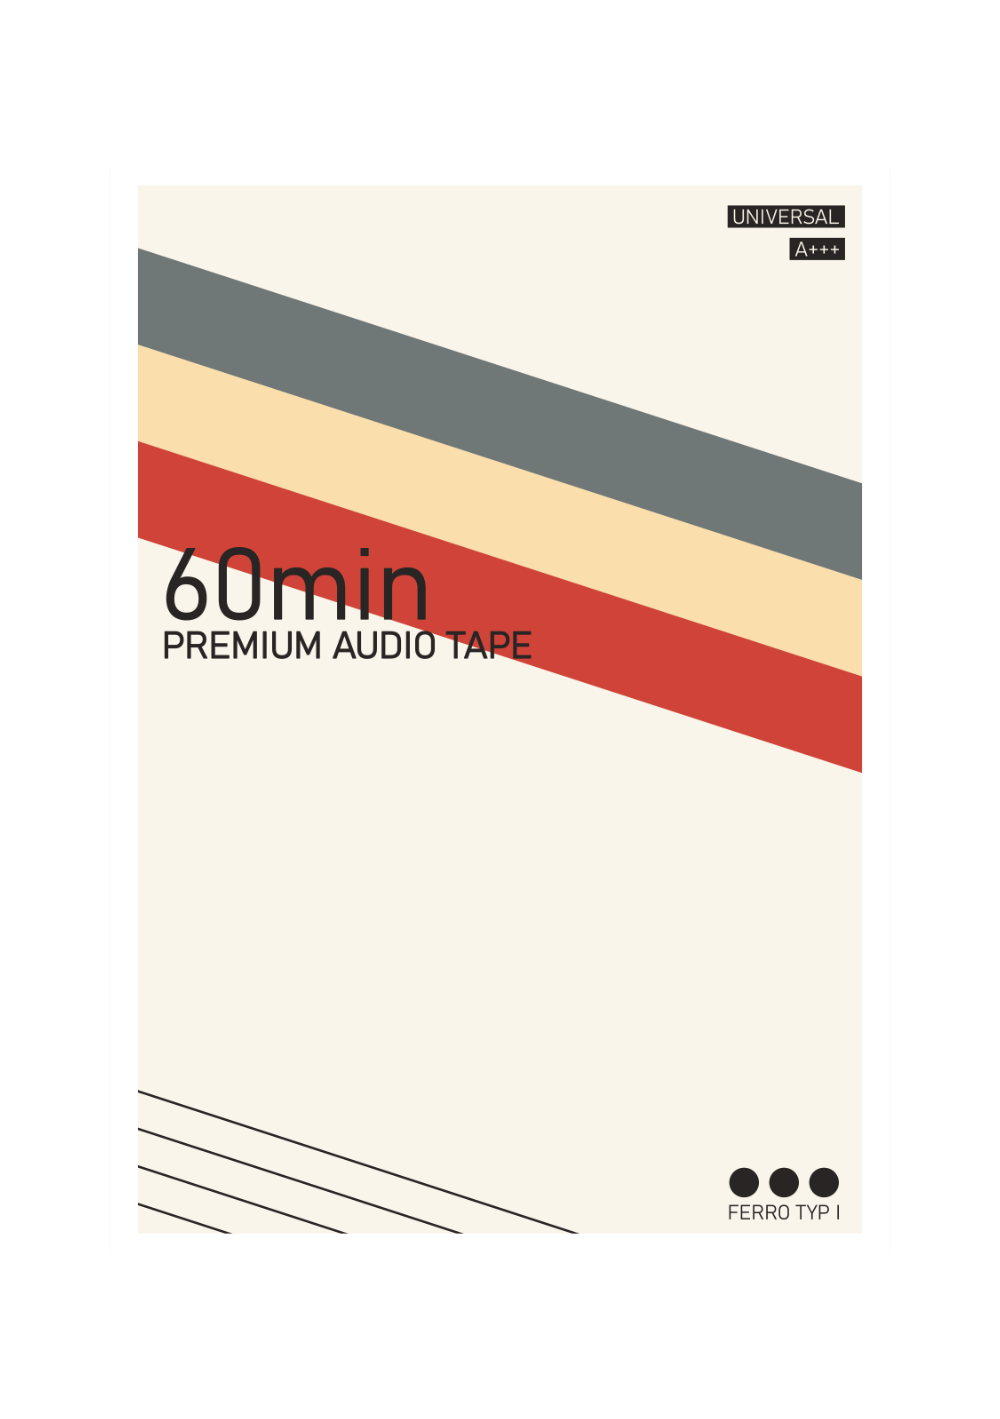 Das Poster zeigt dir eine vintage Gestaltung einer Kompaktkassette mit den typischen retro Farben der 80er und 90er Jahre. 